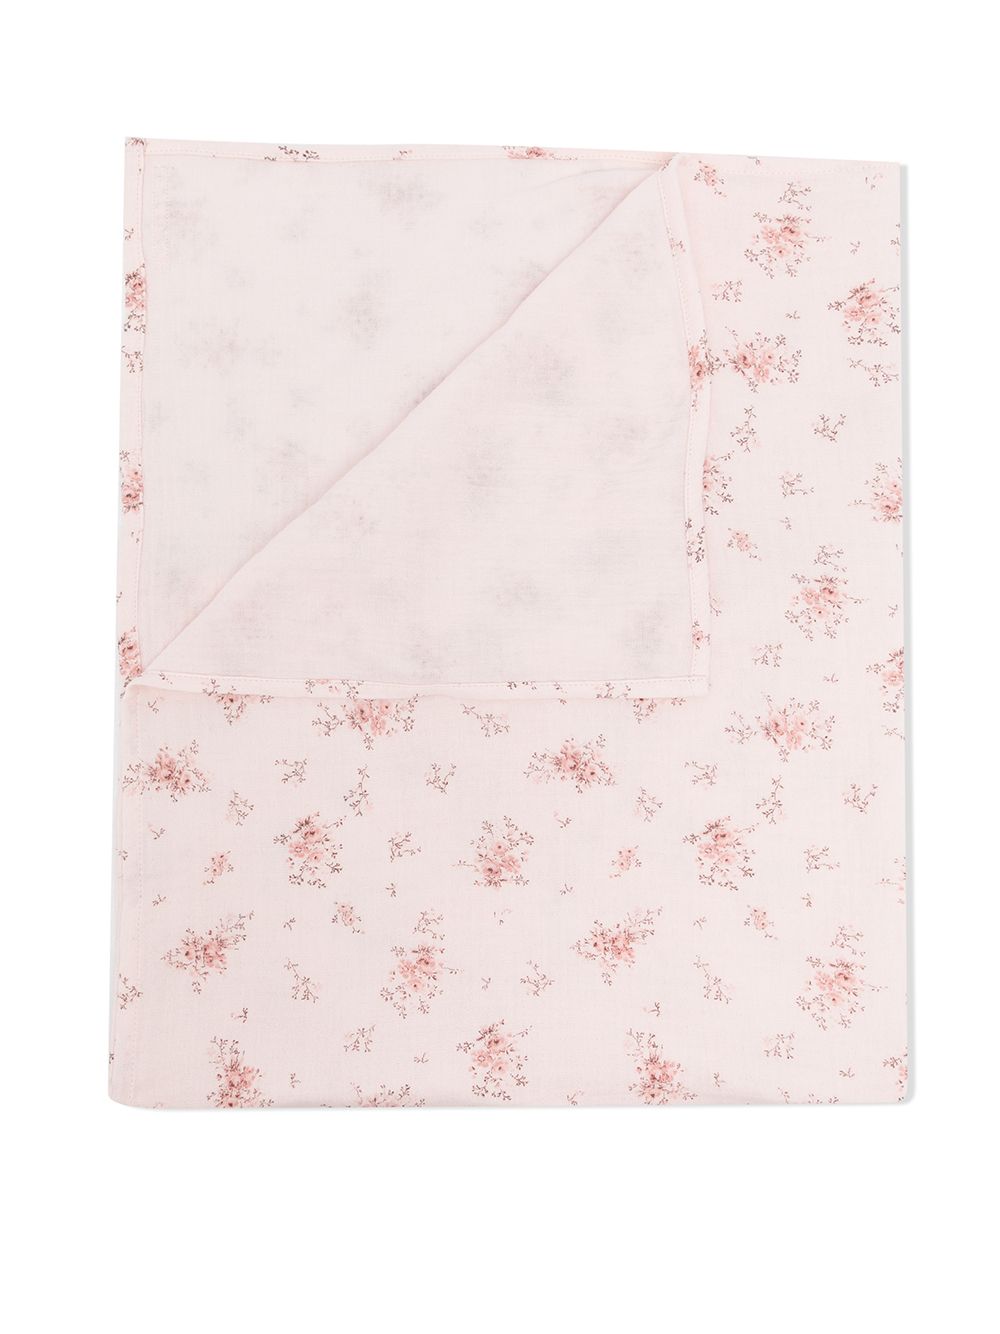 фото Tartine et chocolat одеяло с цветочным принтом